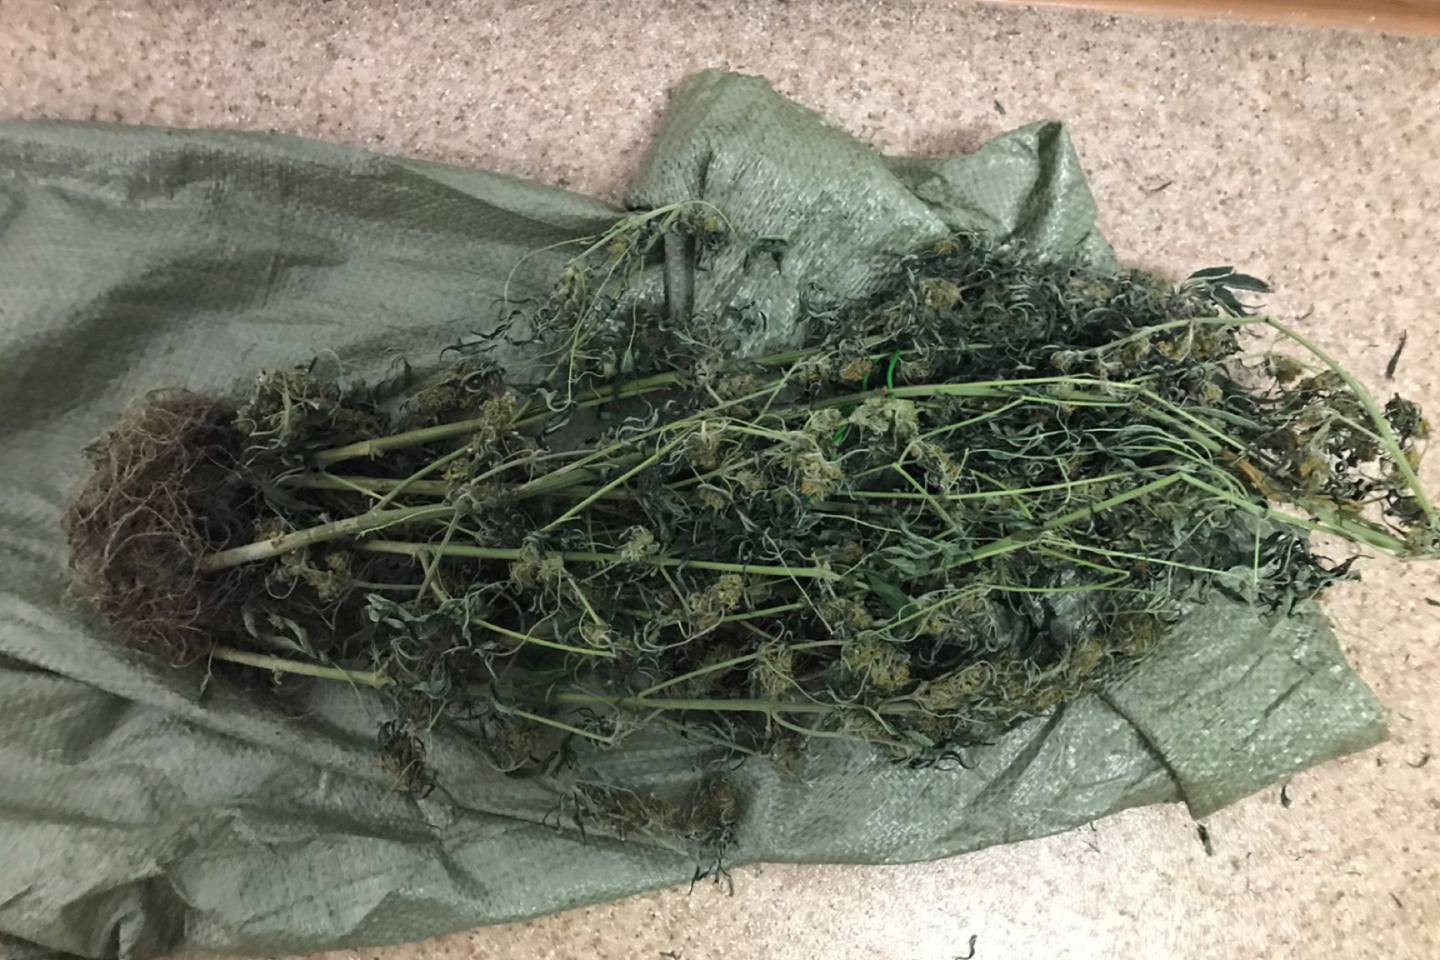 Происшествия в Казахстане и мире / Криминальные новости / Мужчина выращивал марихуану в собственном подвале в ВКО